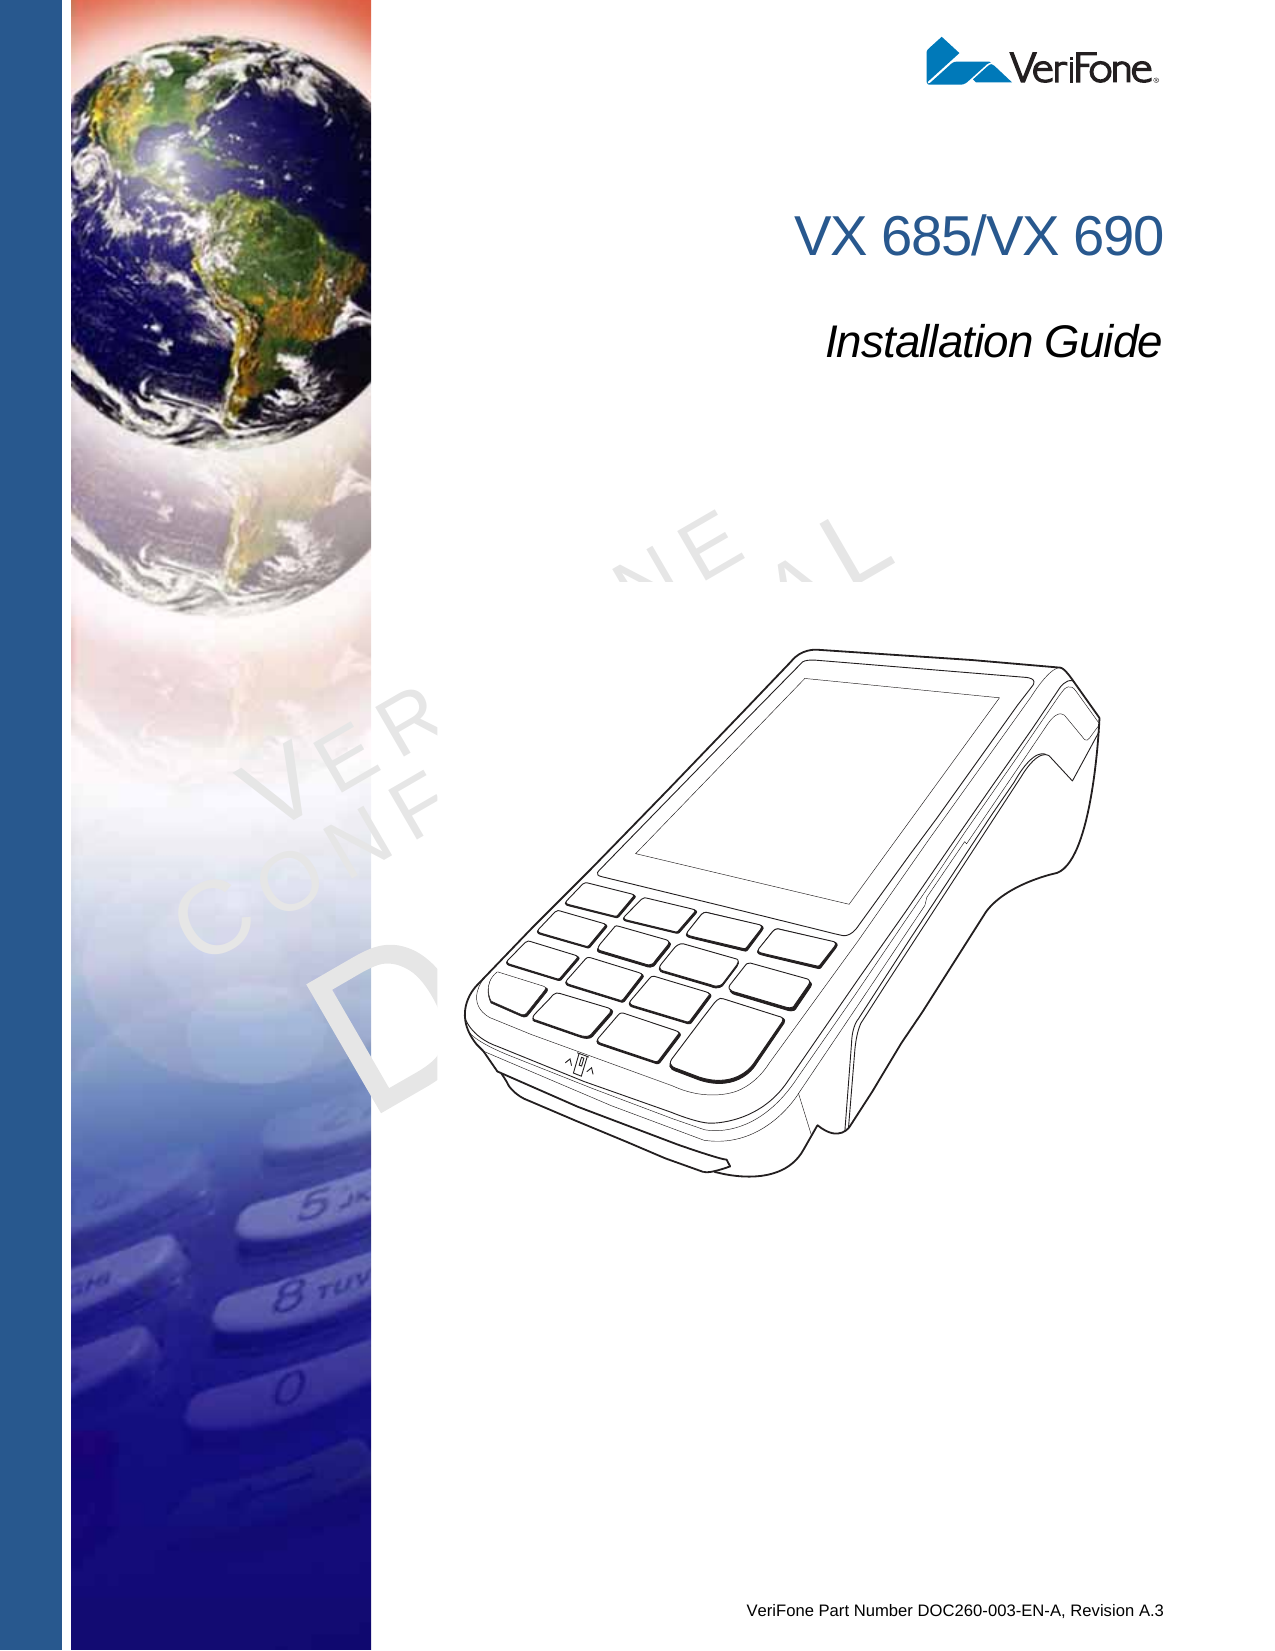 VeriFone Part Number DOC260-003-EN-A, Revision A.3VERIFONECONFIDENTIALREVISION A.1 VX 685/VX 690Installation Guide